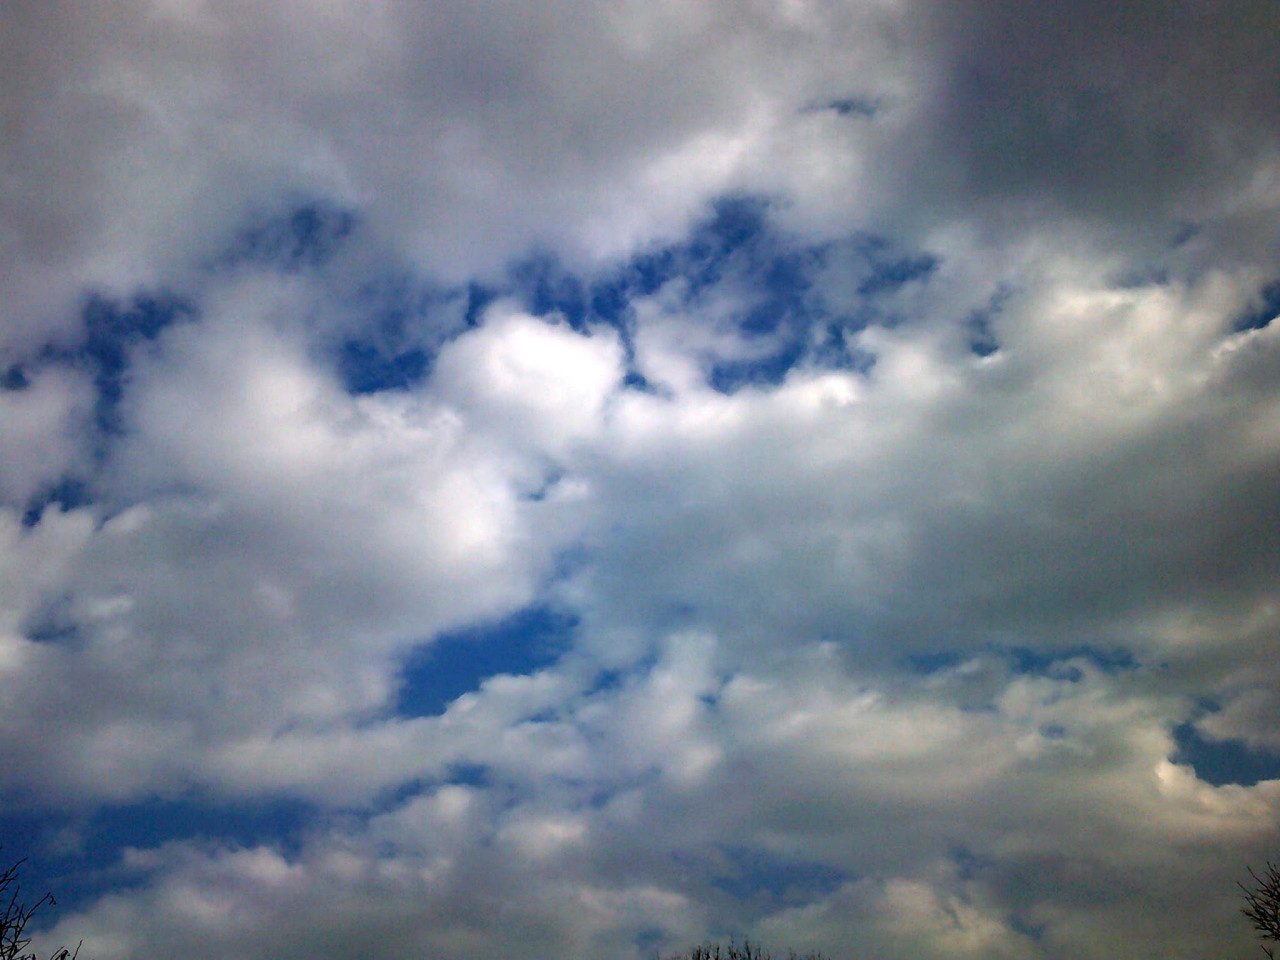 Meteo Palermo: oggi giovedì 21 Settembre prevalentemente nuvoloso per velature, previste forti raffiche di vento.